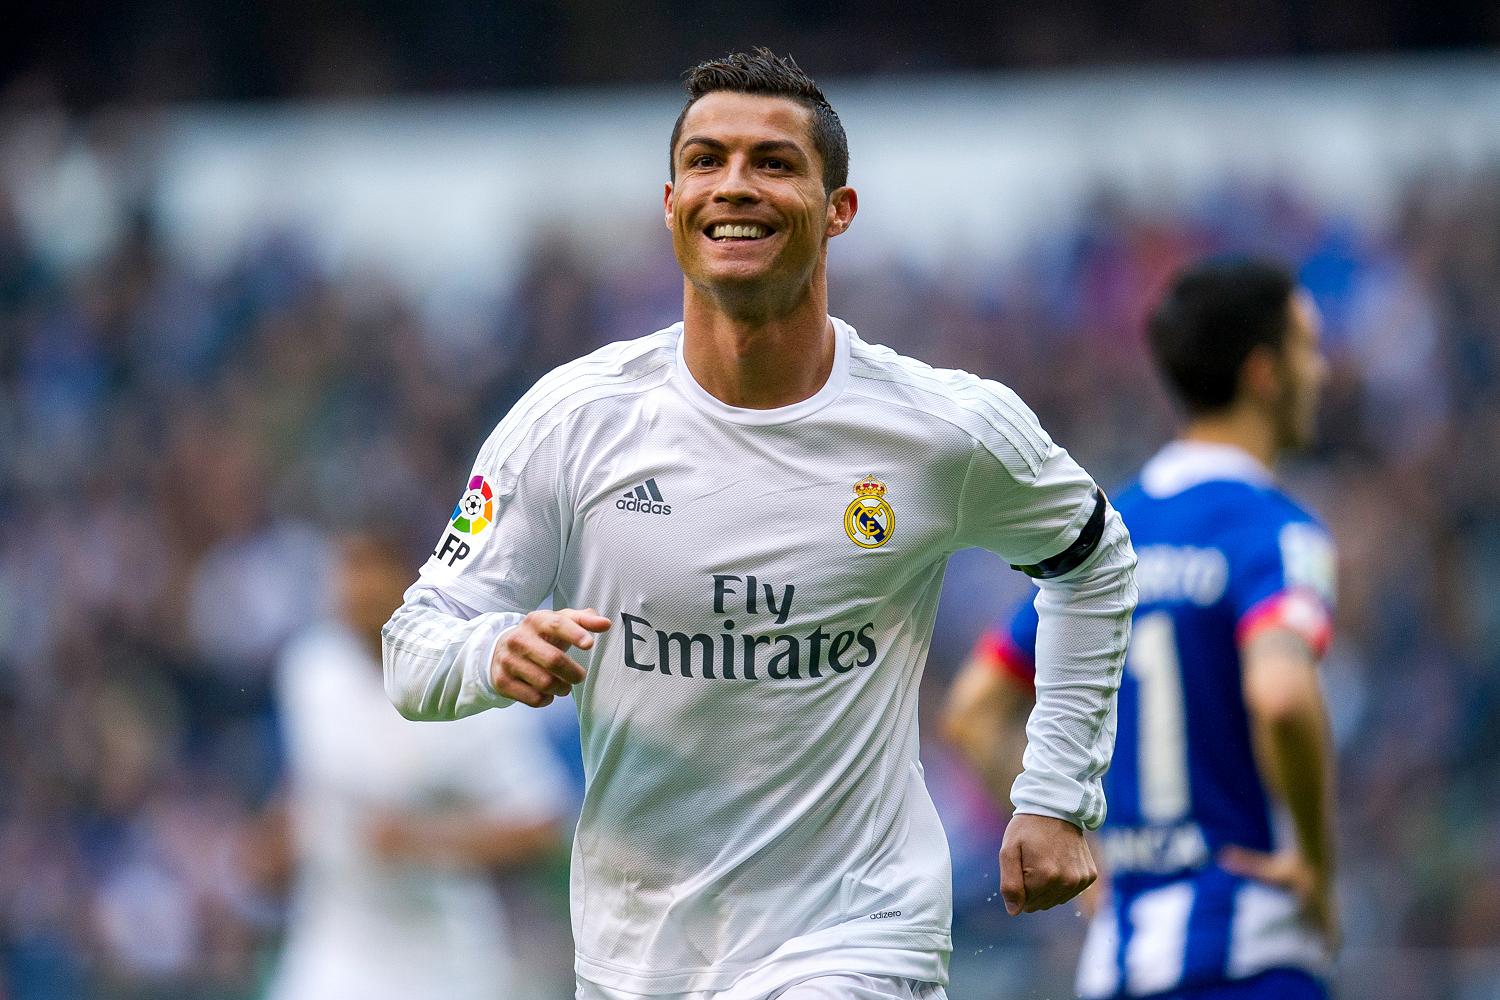  Cristiano Ronaldo, el deportista mejor pagado del mundo: Forbes